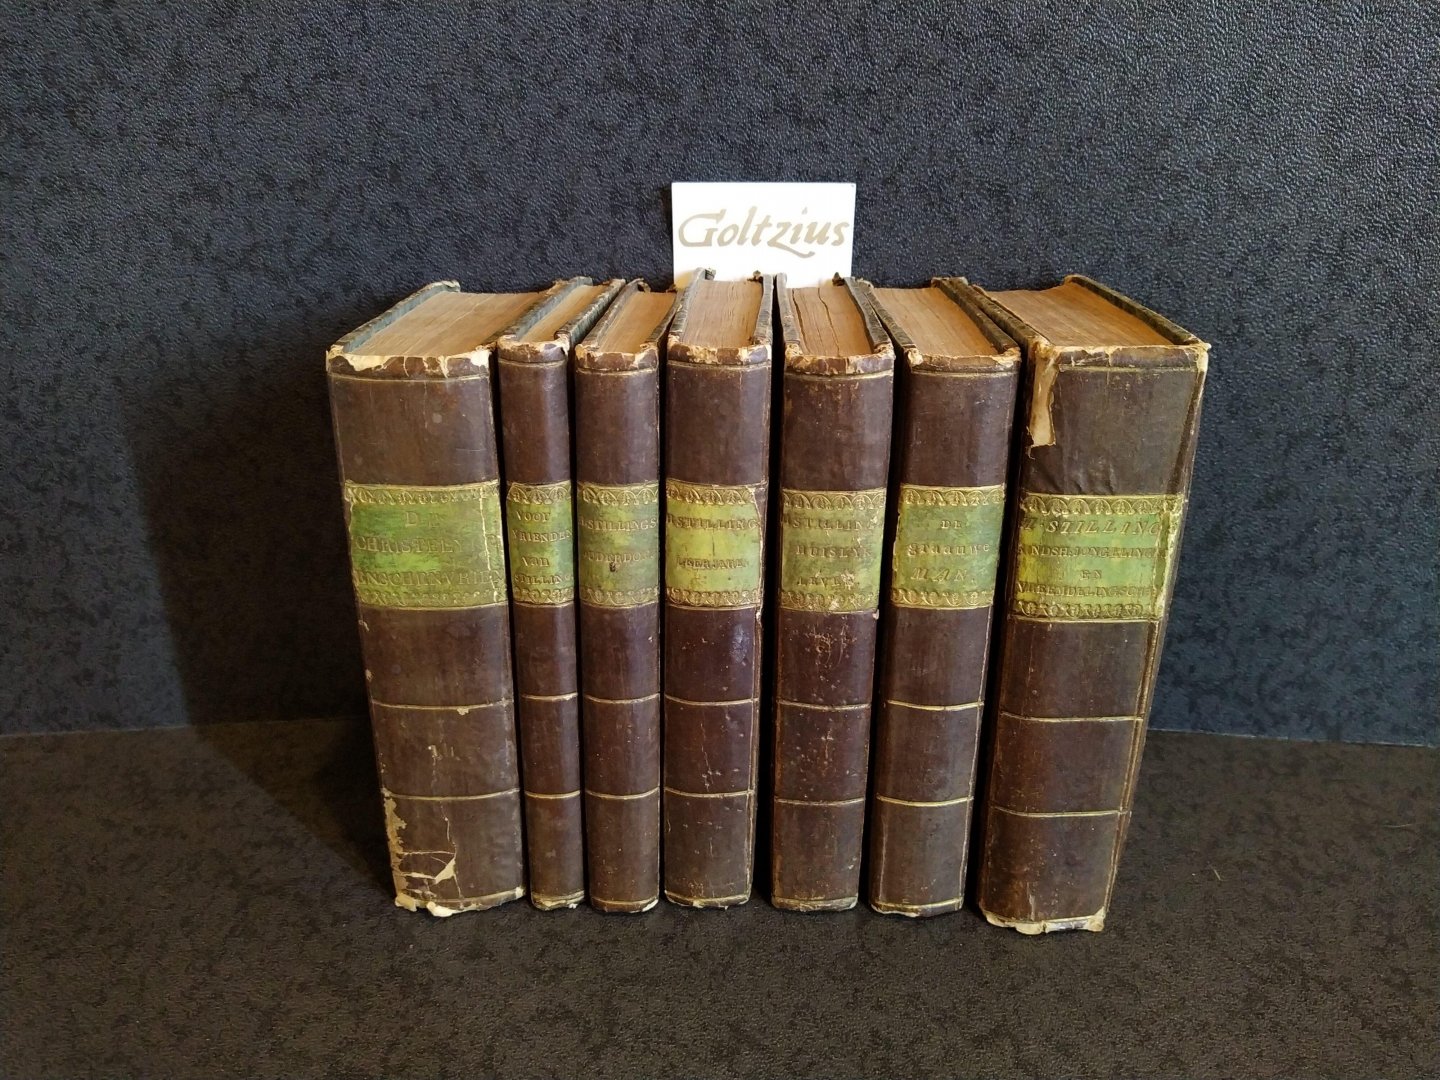 STILLING, HENDRIK, - Lovely set of 7 books concerning Hendrik Stilling, including: Hendrik Stillings Huislijk Leven, Leerjaren, Ouderdom and De Grauwe Man